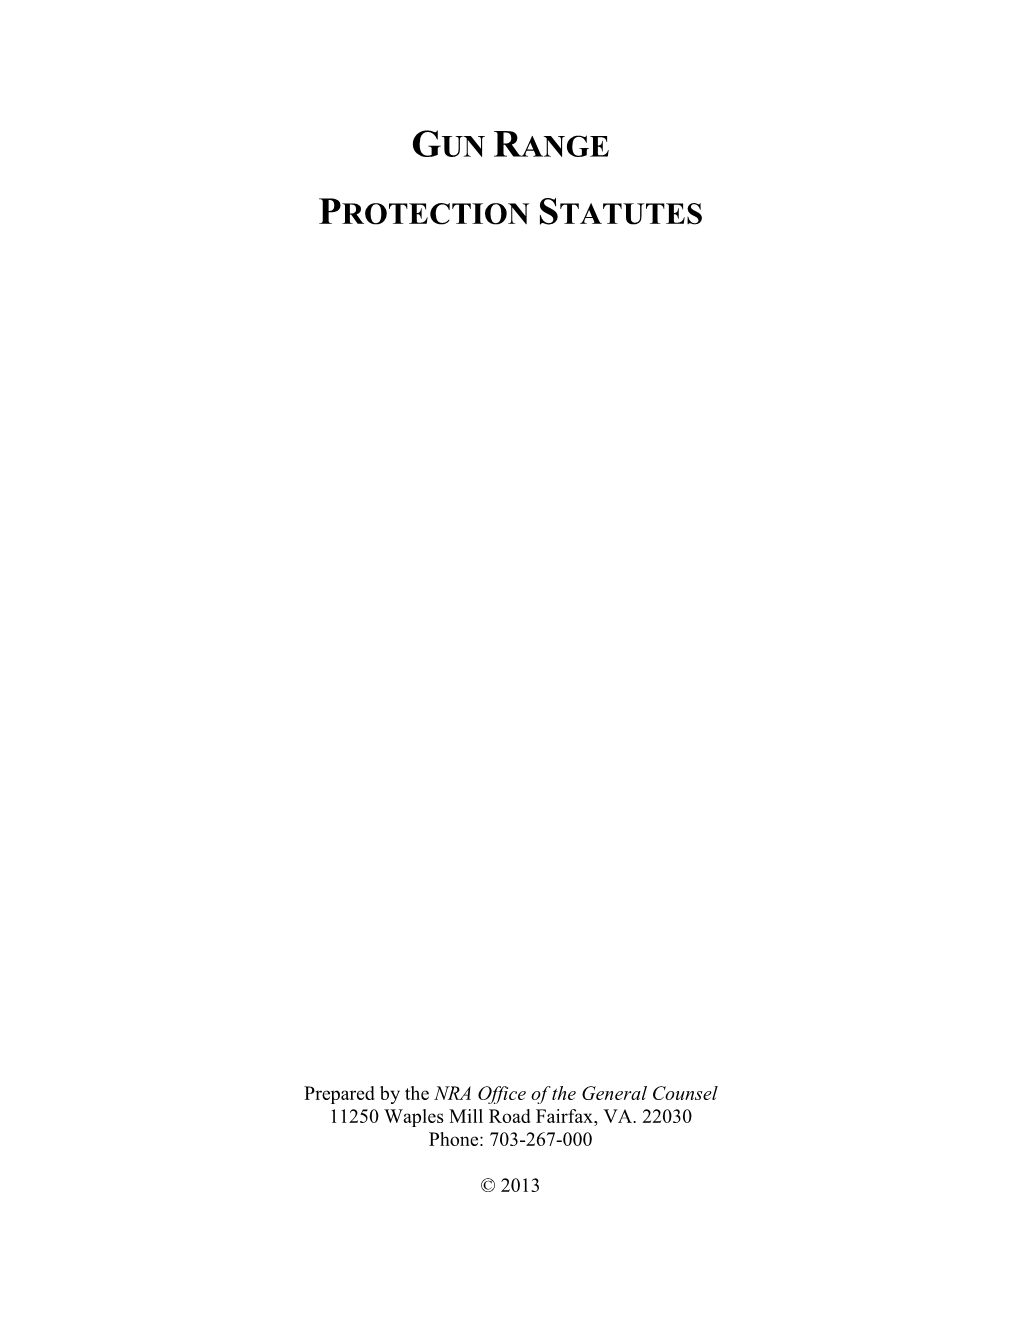 Gun Range Protection Statutes